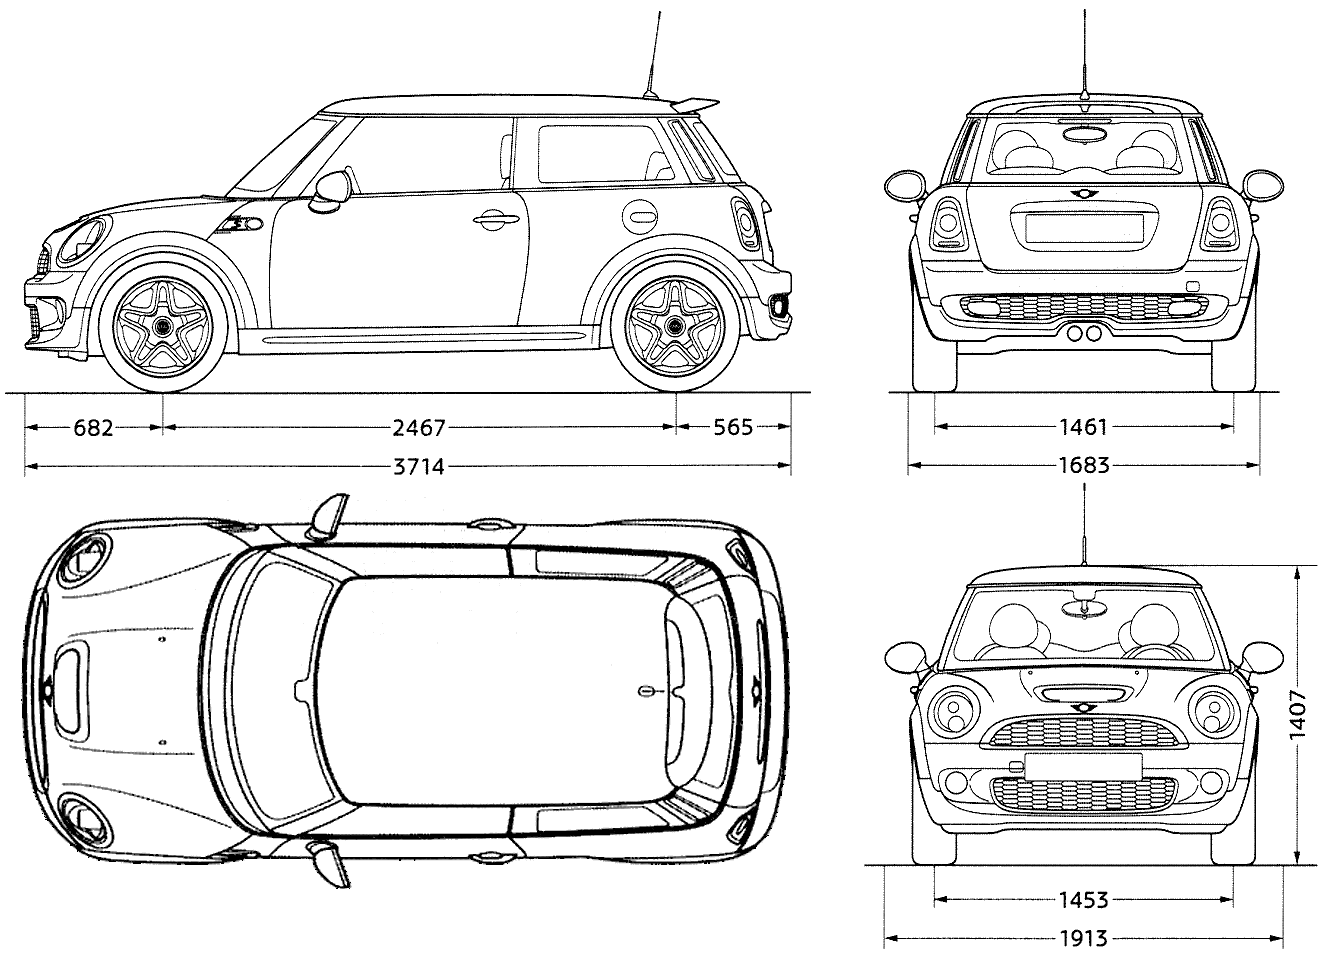 2007-mini-cooper-s-hatchback-blueprints-free-outlines